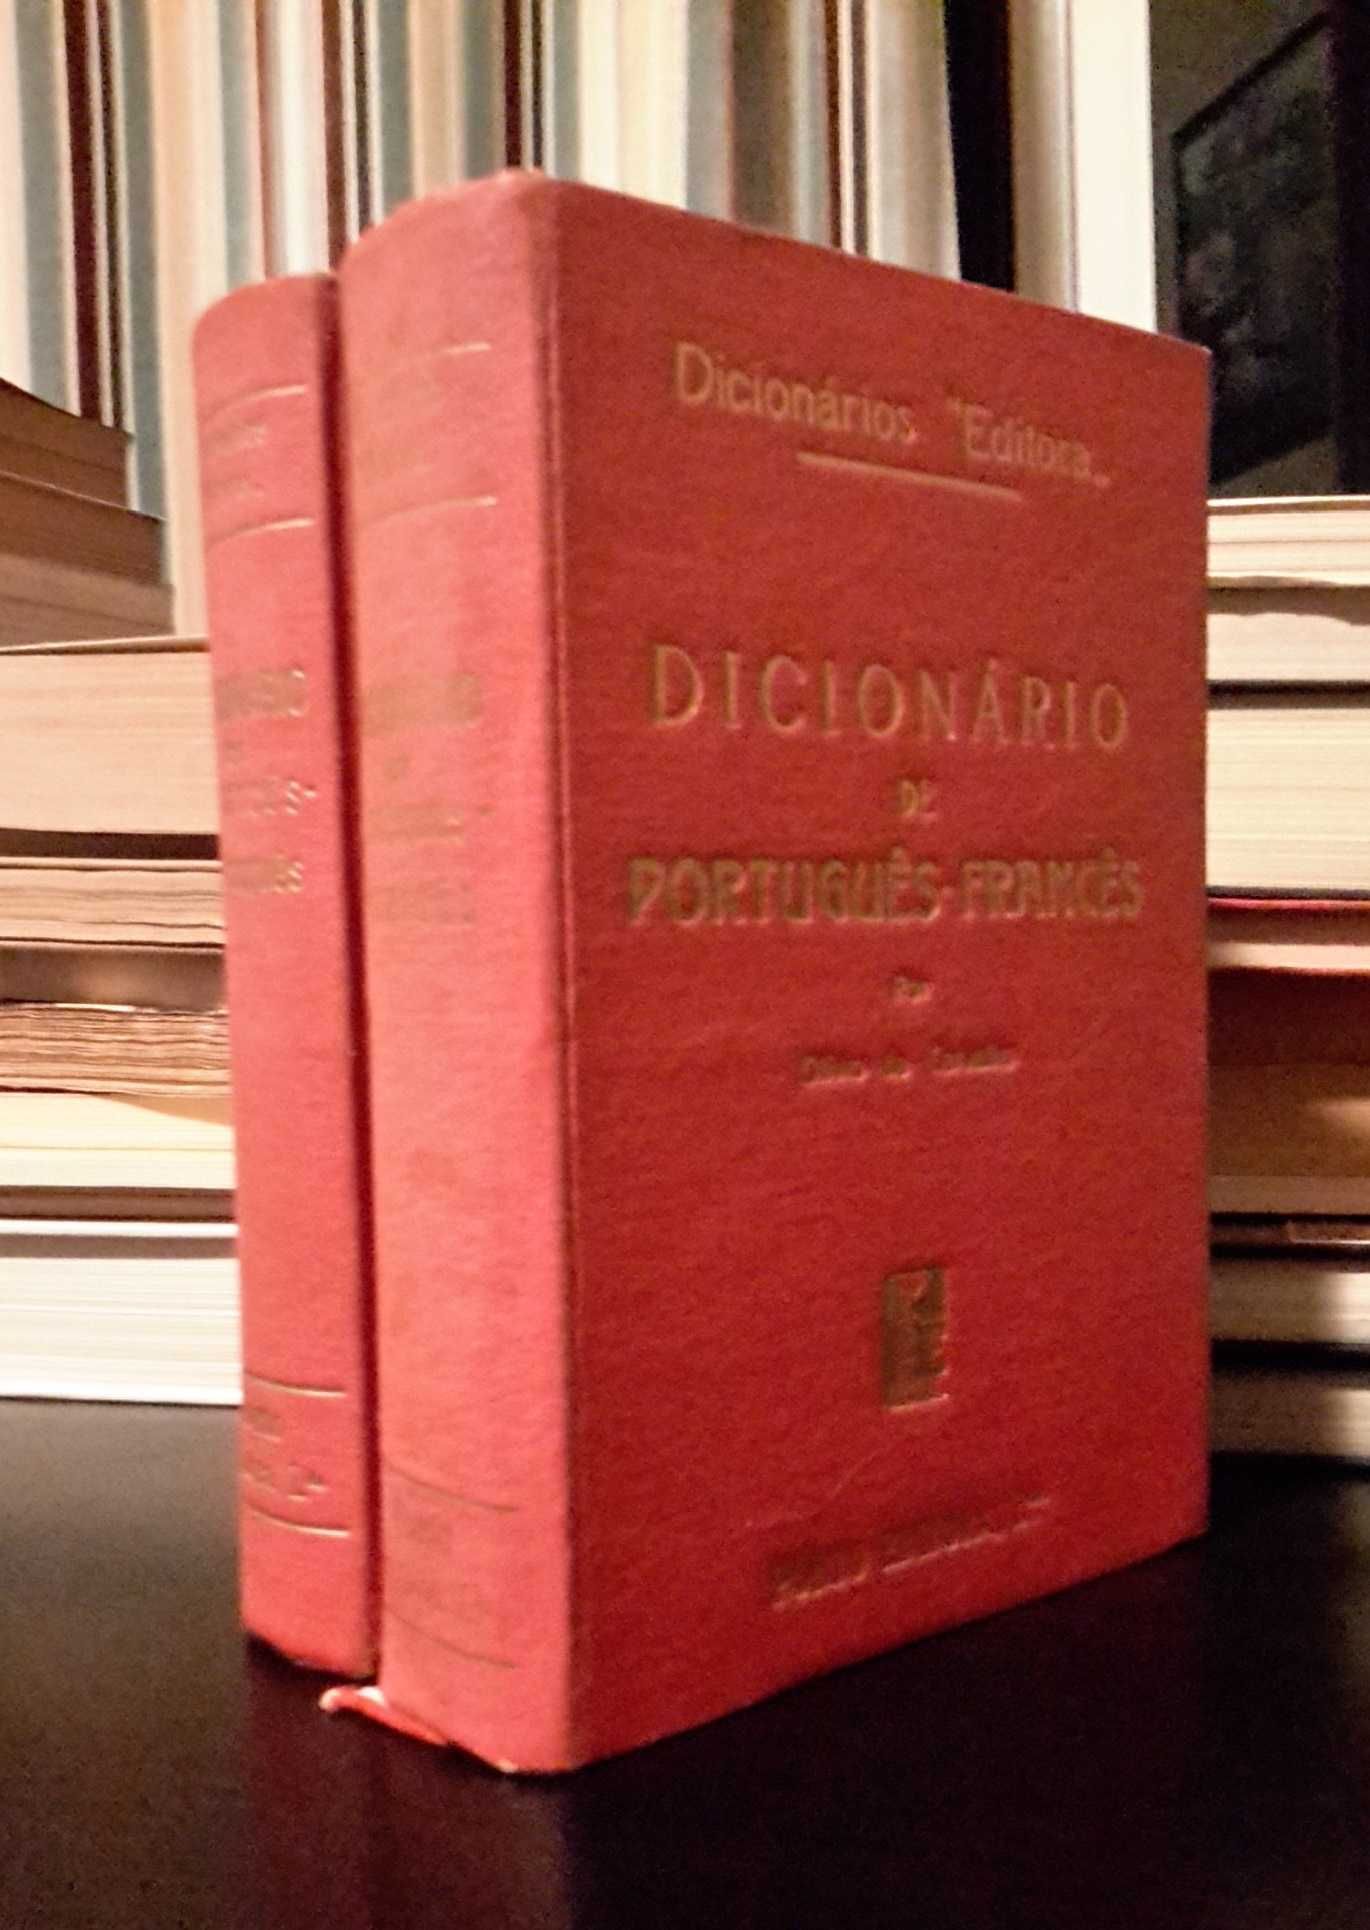 Dicionários de Francês-Português-Francês por Olívio de Carvalho